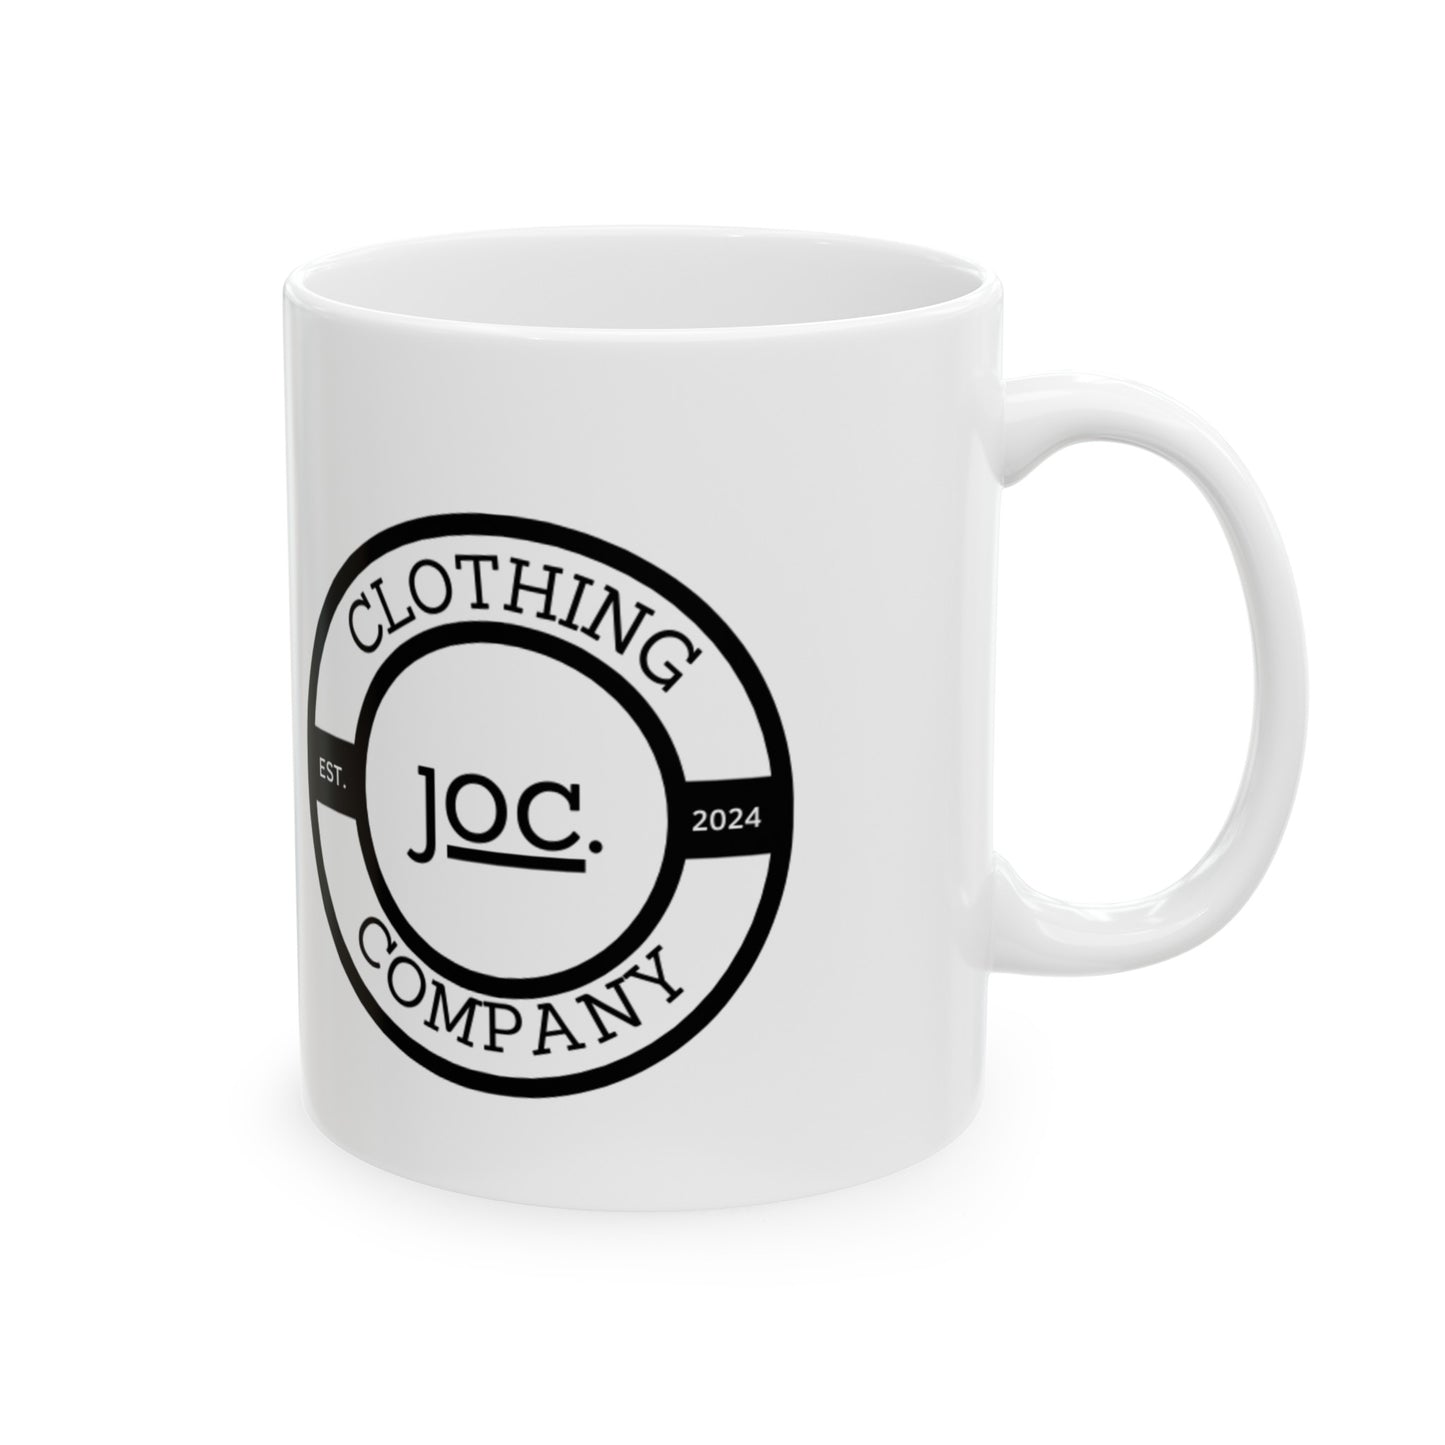 JOC Clothing Mug, (11oz, 15oz)